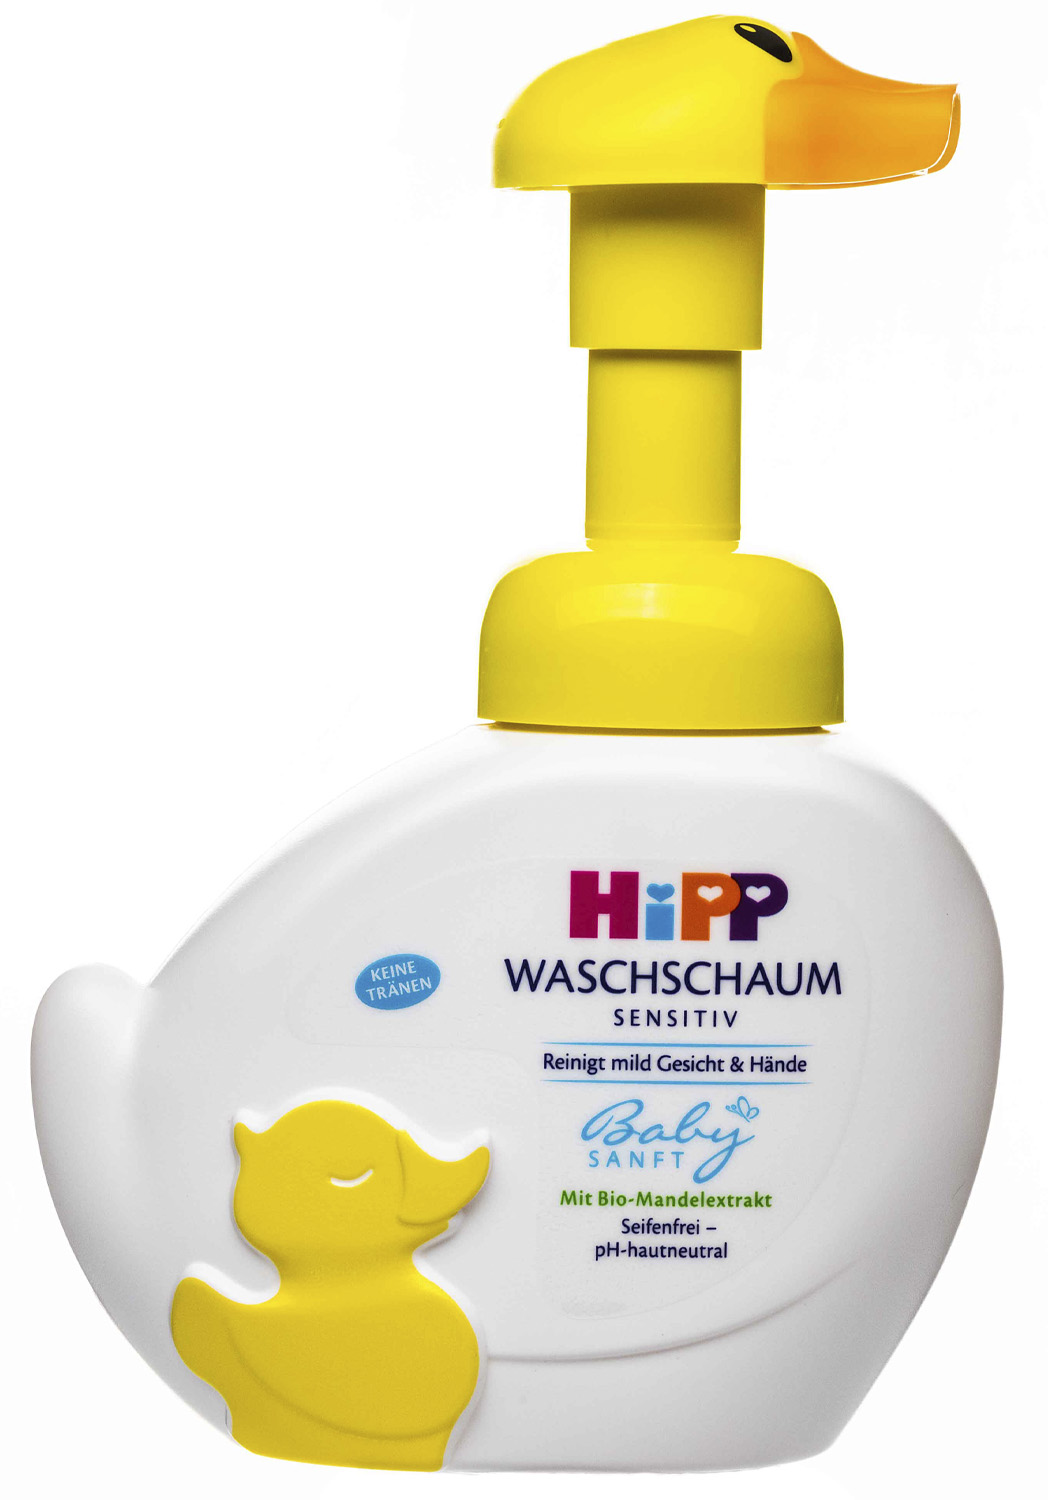 HIPP Детская моющая пенка для лица и рук “Уточка” Babysanft 